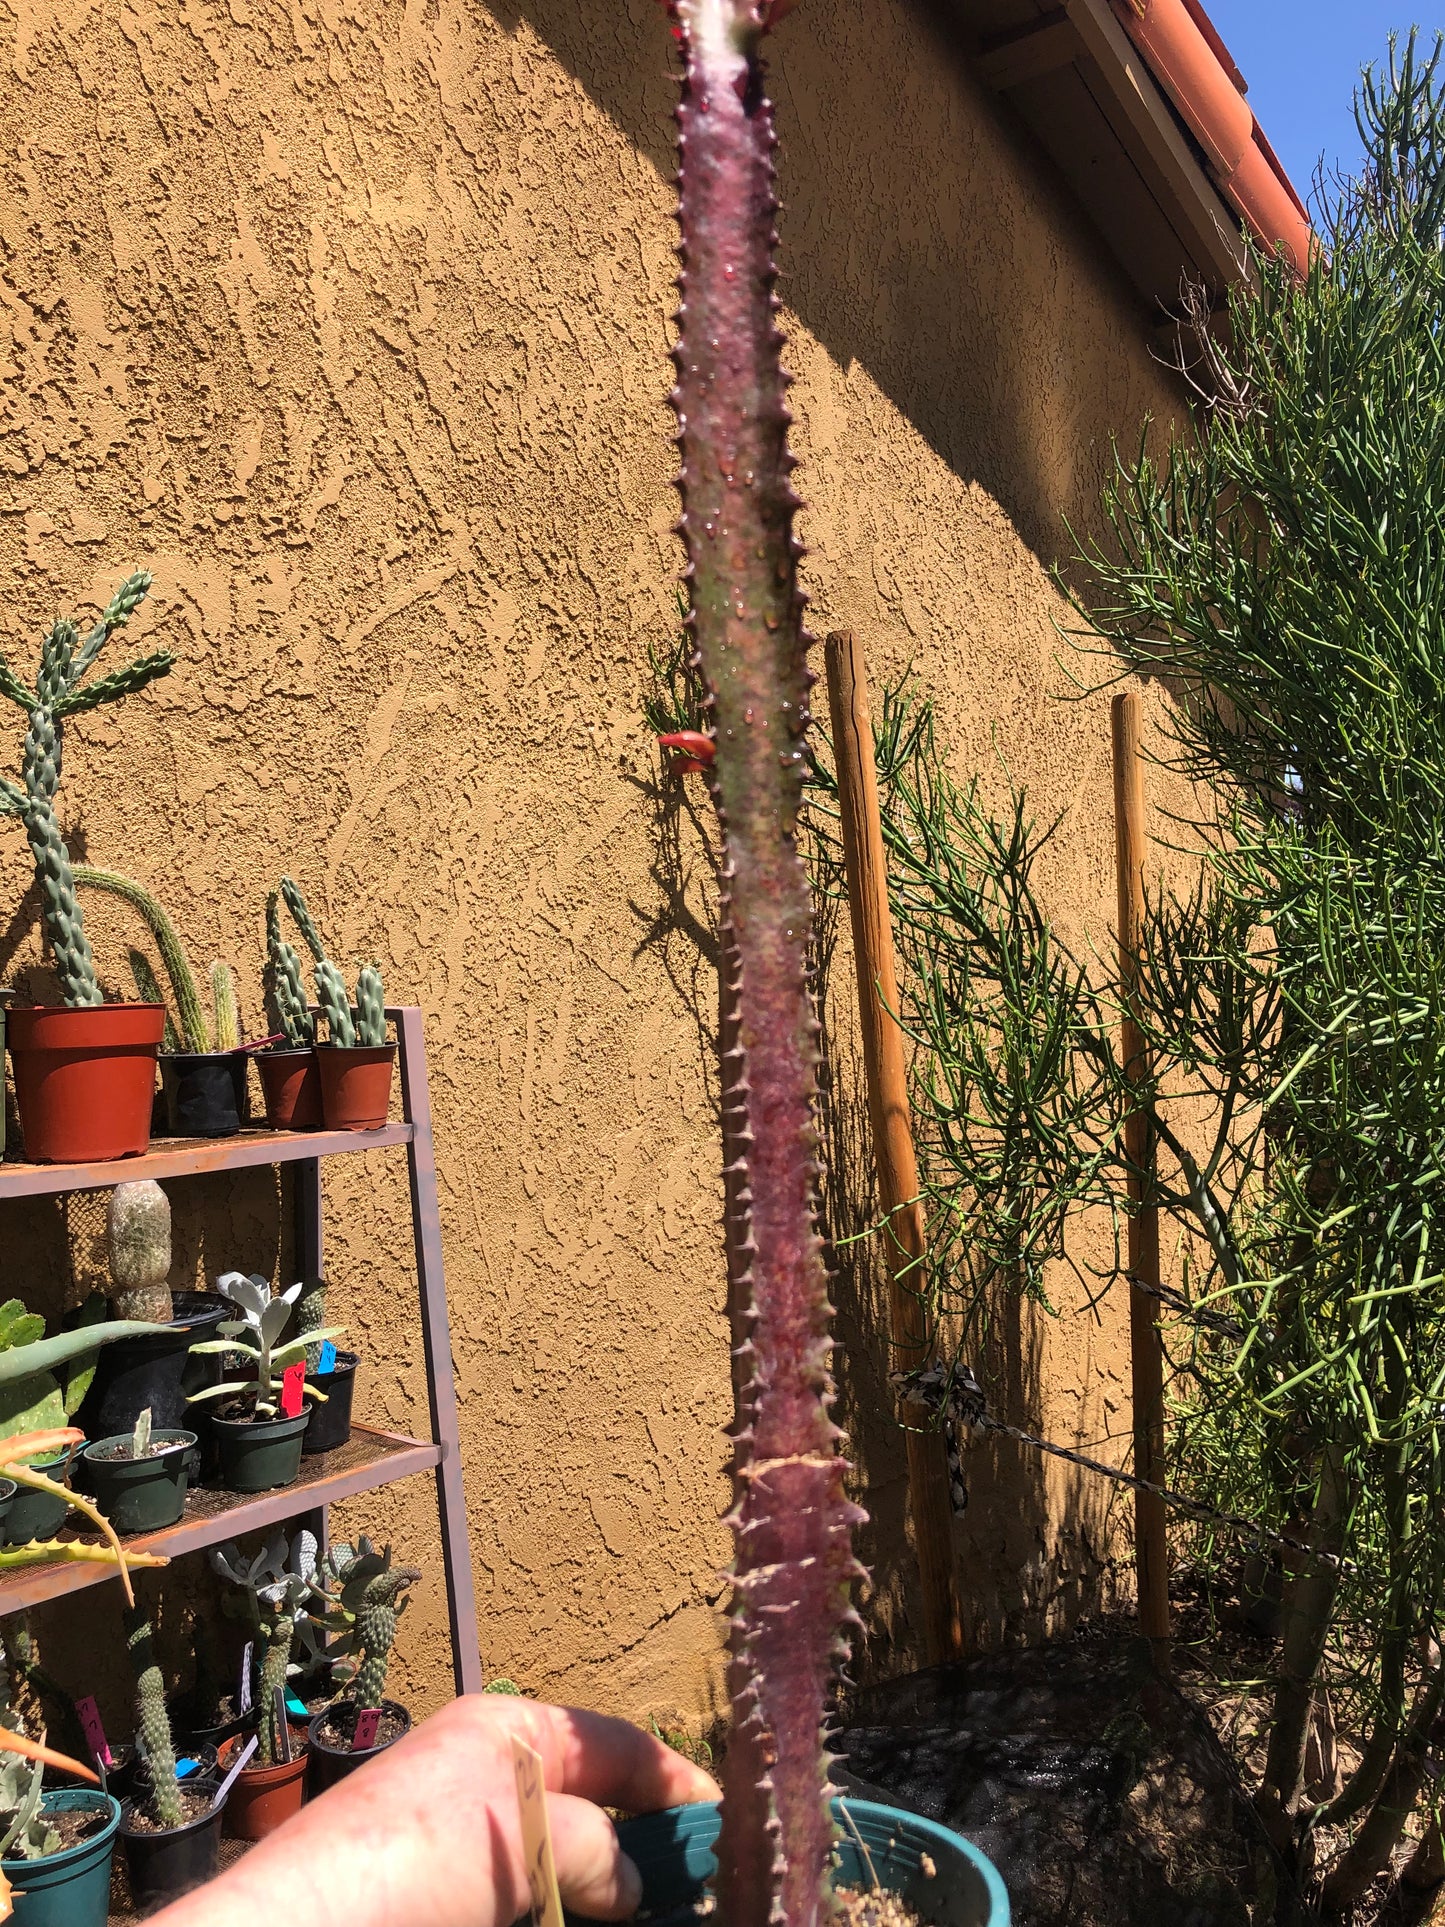 Euphorbia Royal Red Trigona 22”Tall #12Y